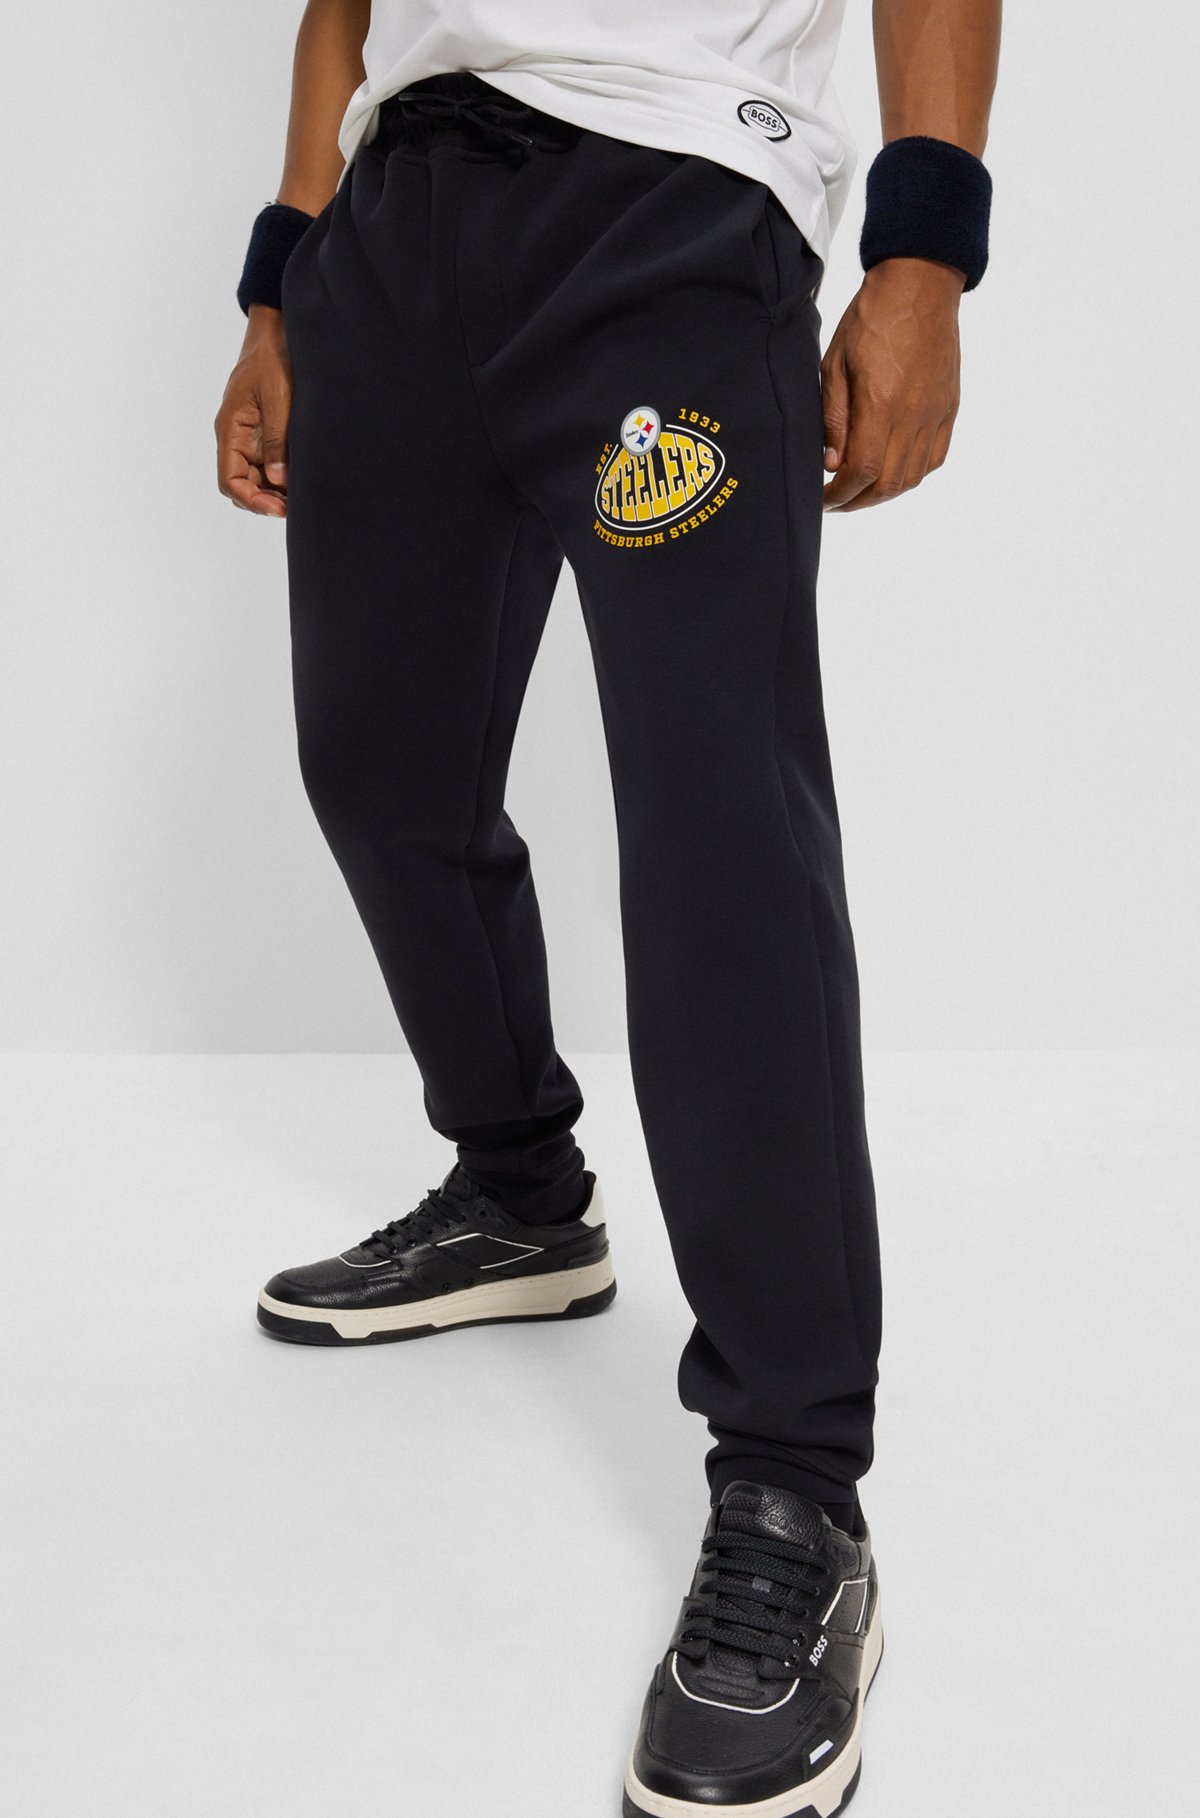 Pantalones de chándal BOSS x NFL de mezcla de algodón con detalle de la colaboración, Steelers